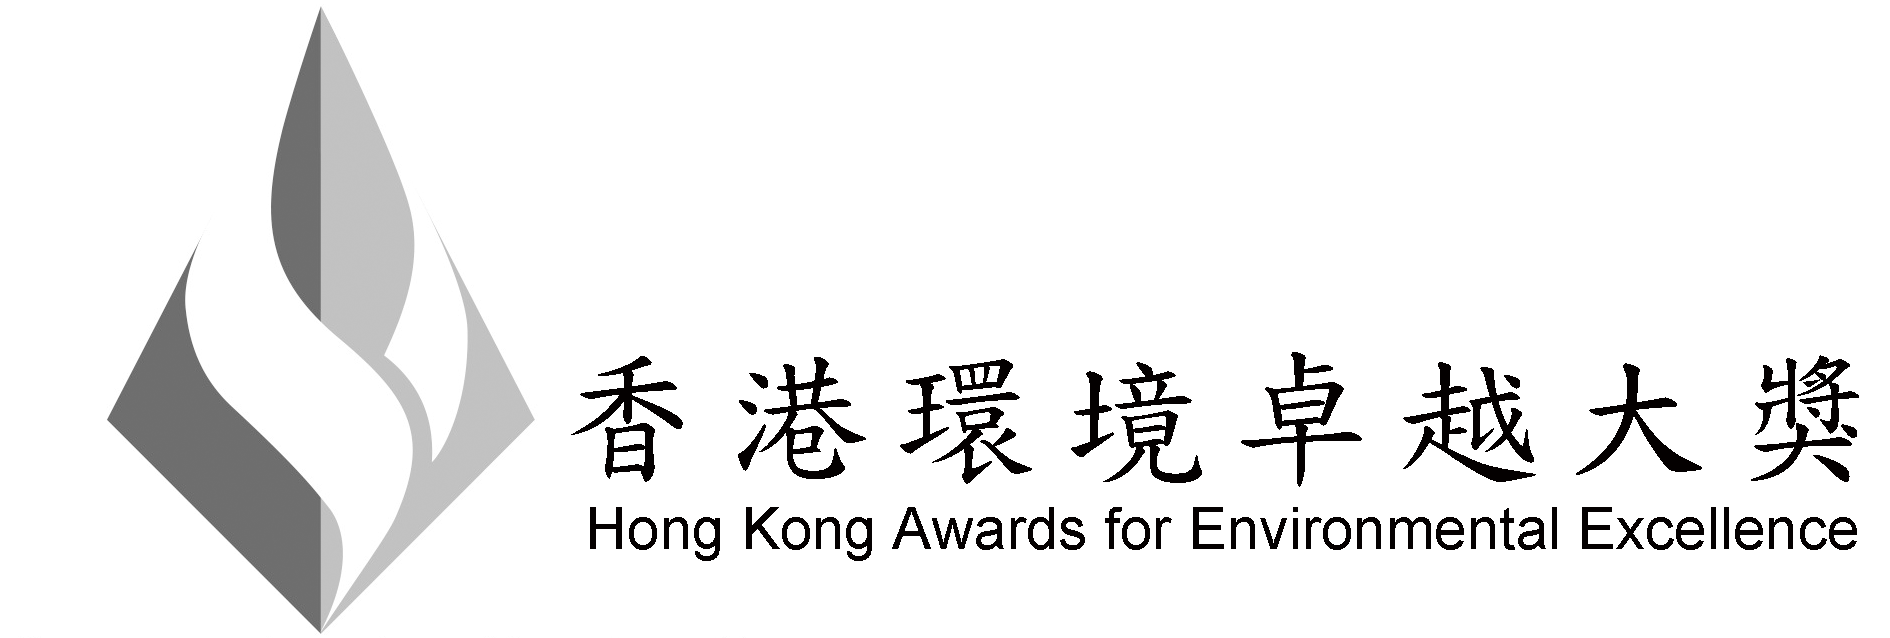 香港環境卓越大獎